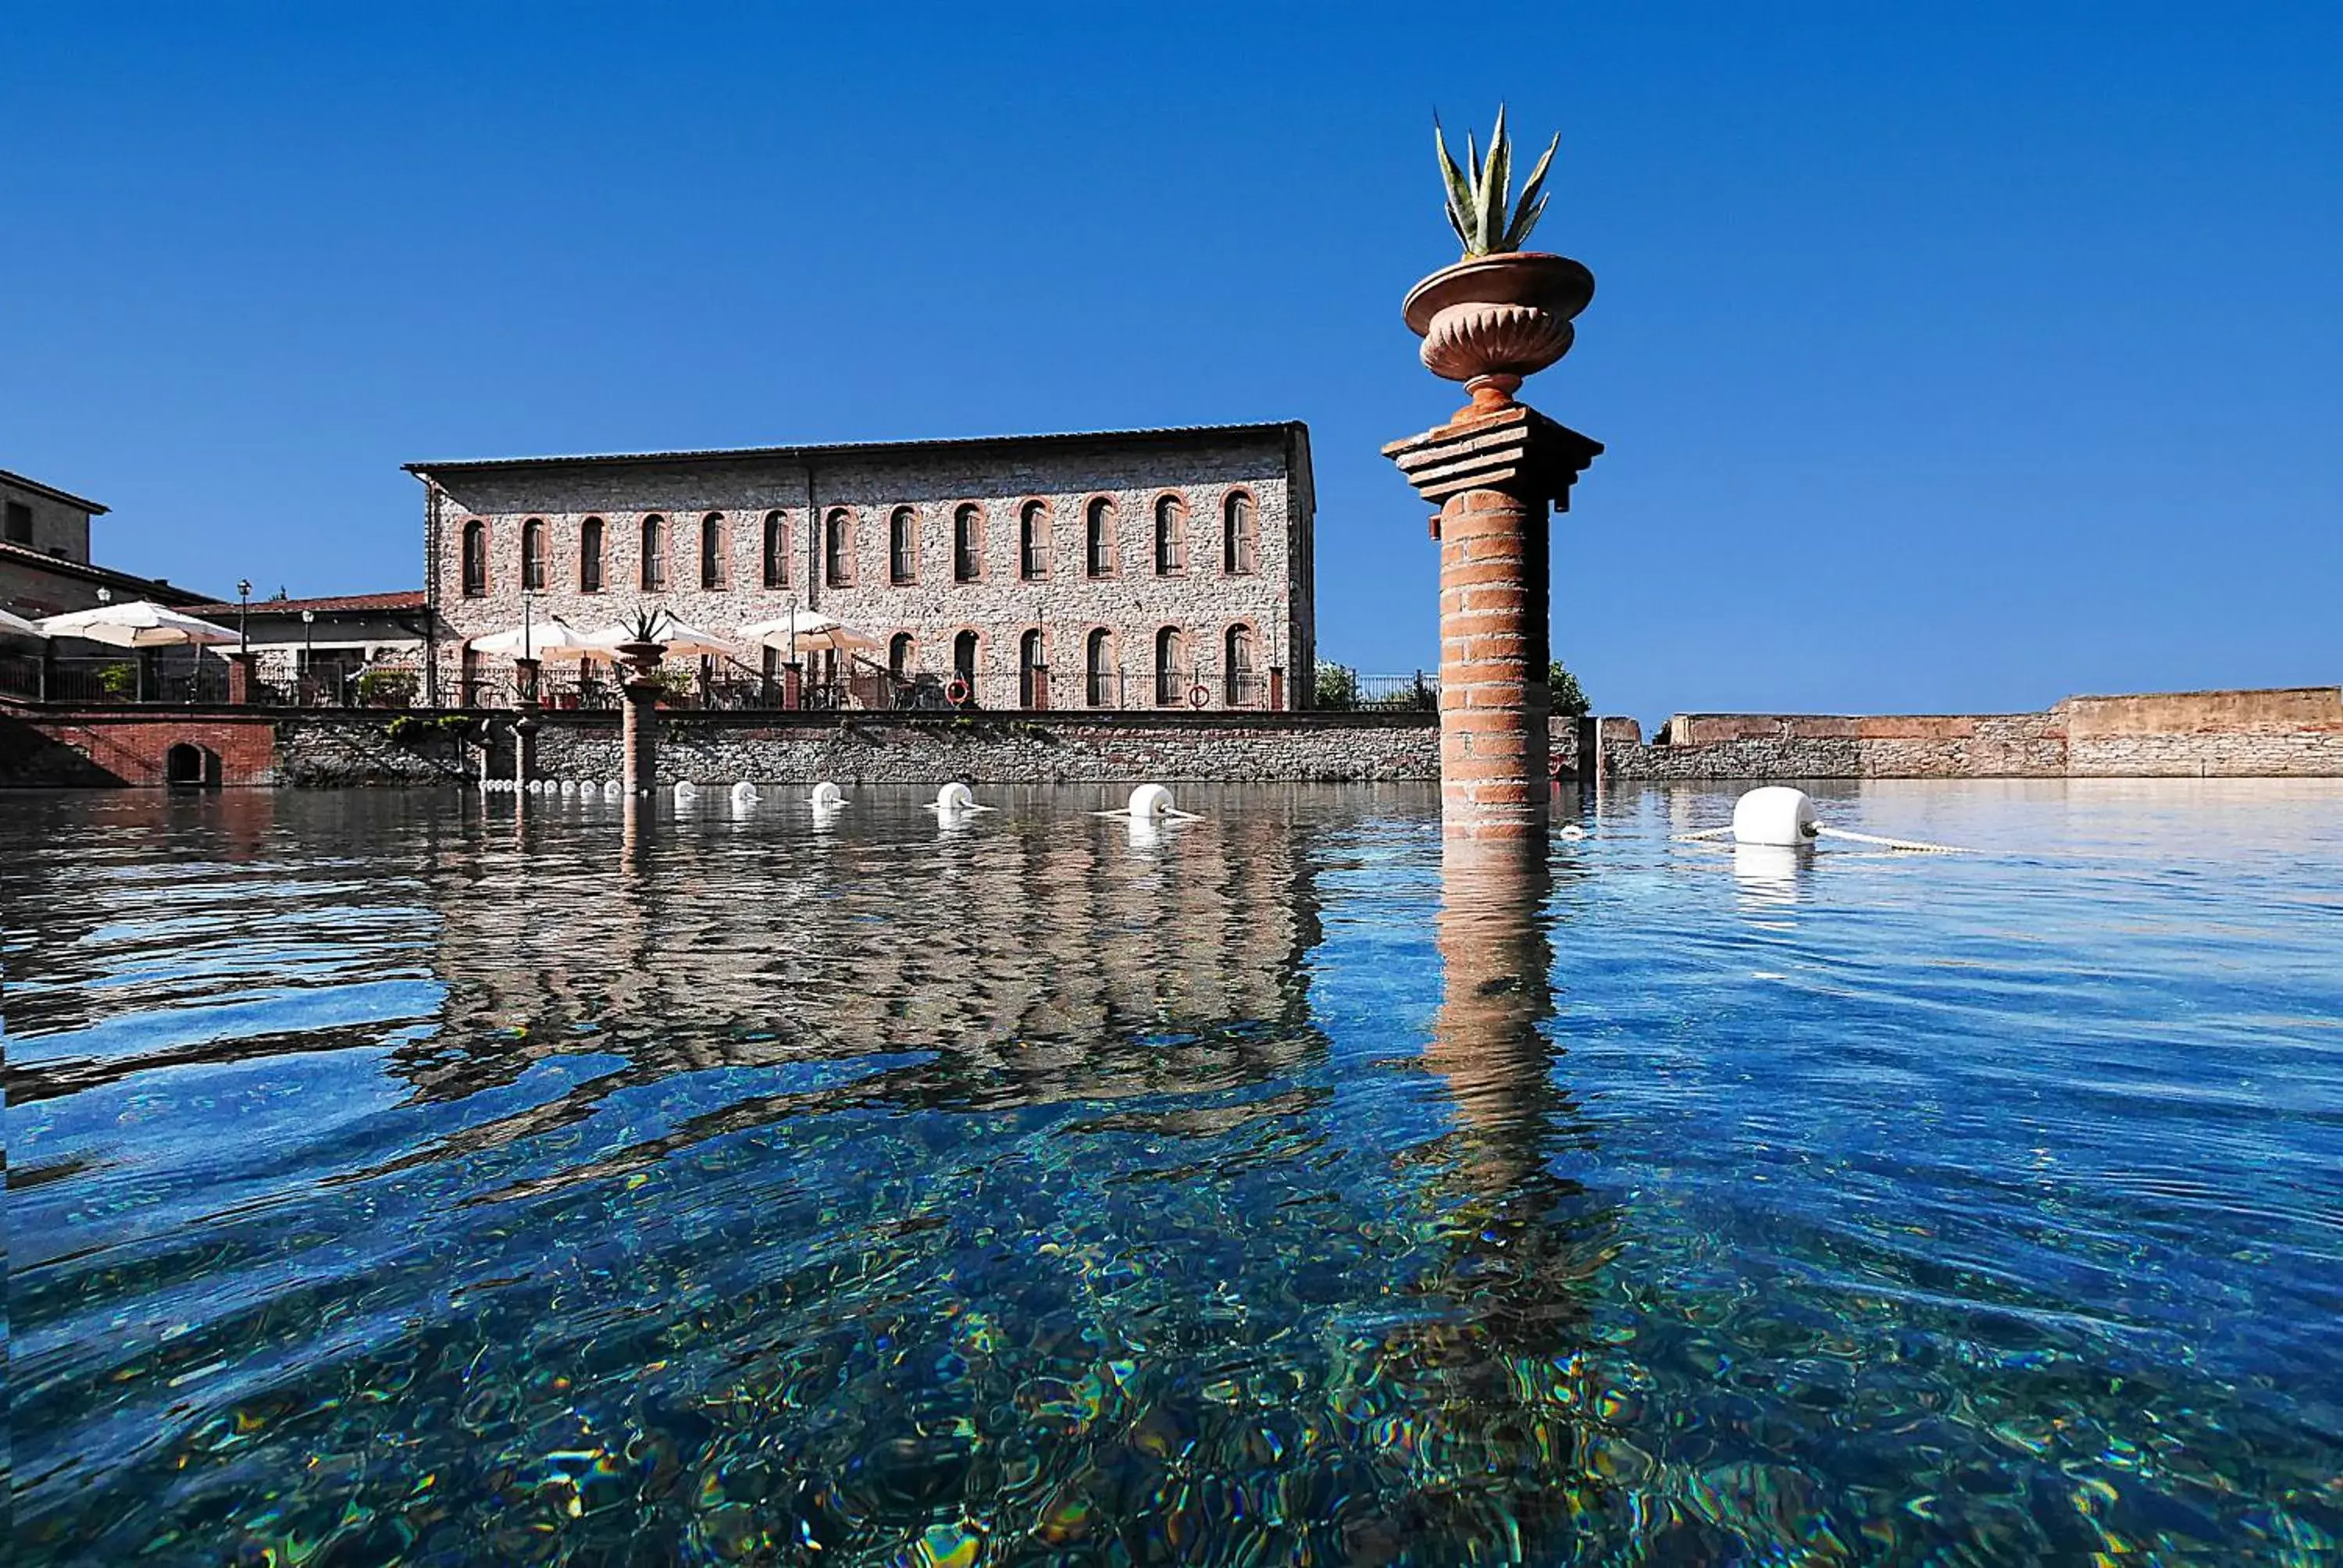 Hot Spring Bath, Property Building in Calidario Terme Etrusche